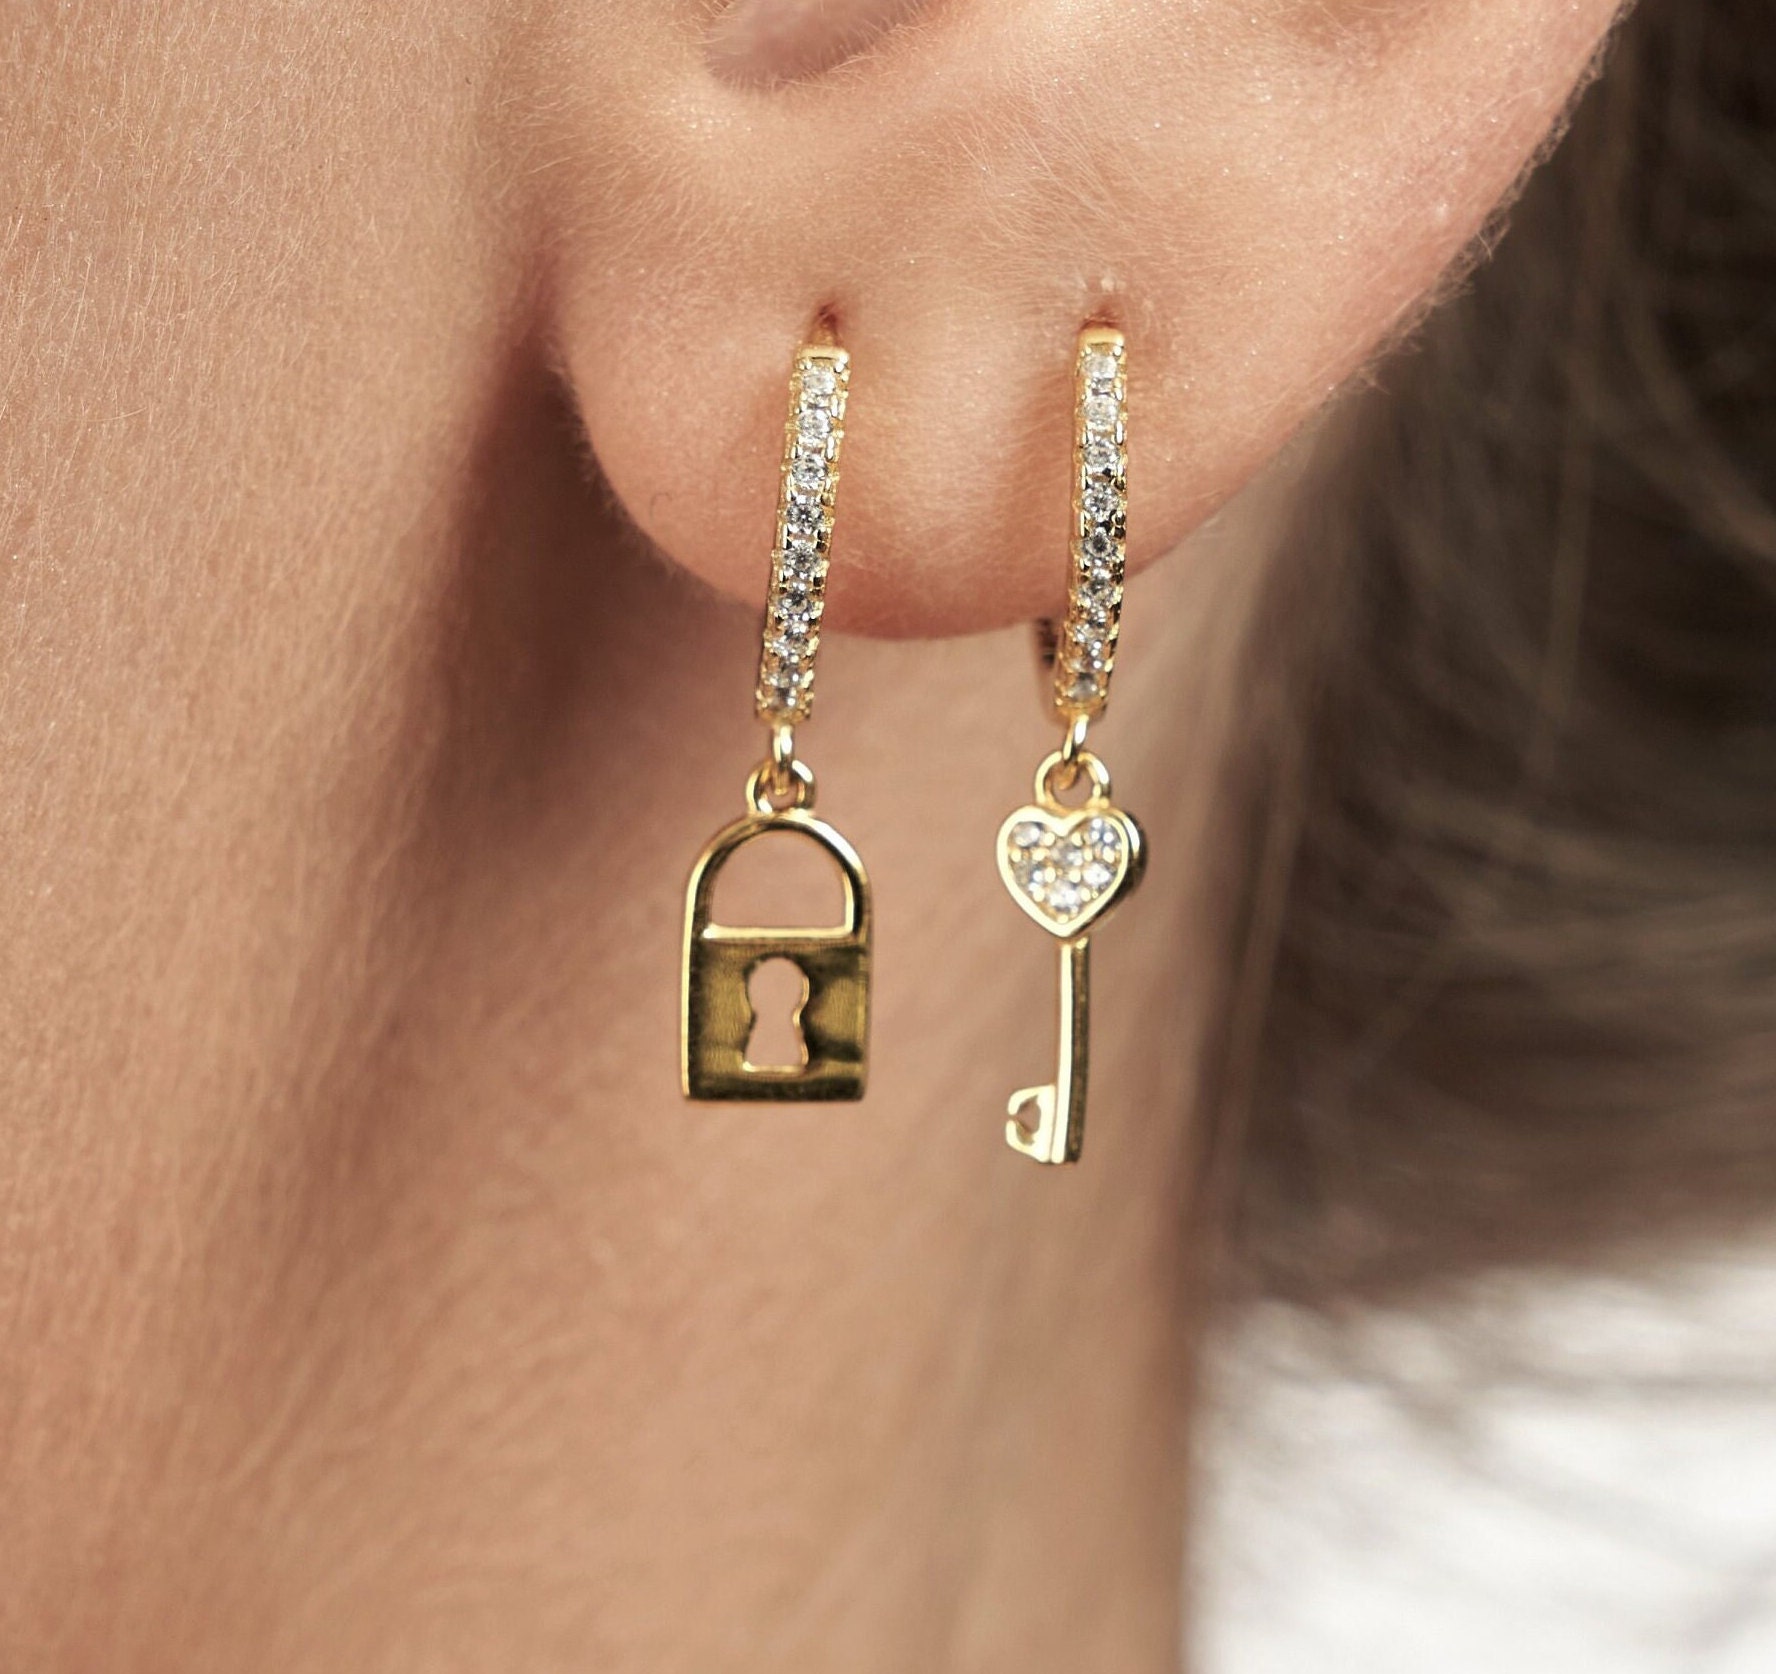 PAVE LOCK KEY EARRINGS Gold pave lock key earrings by KURT GEIGER LONDON